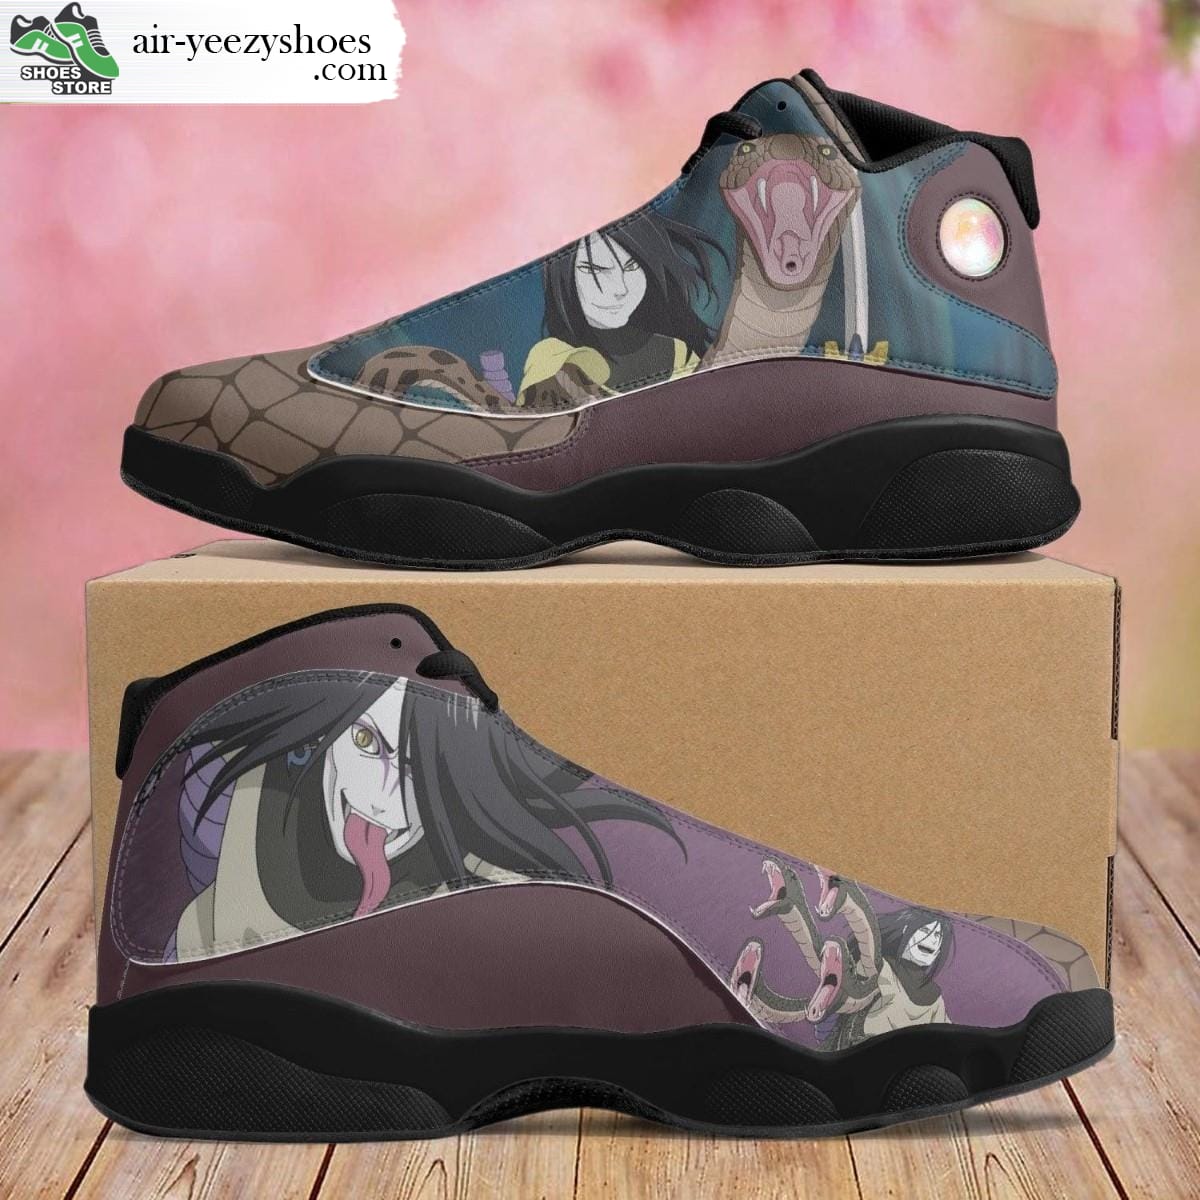 Orochimaru Jordan 13 Shoes, Naruto Gift